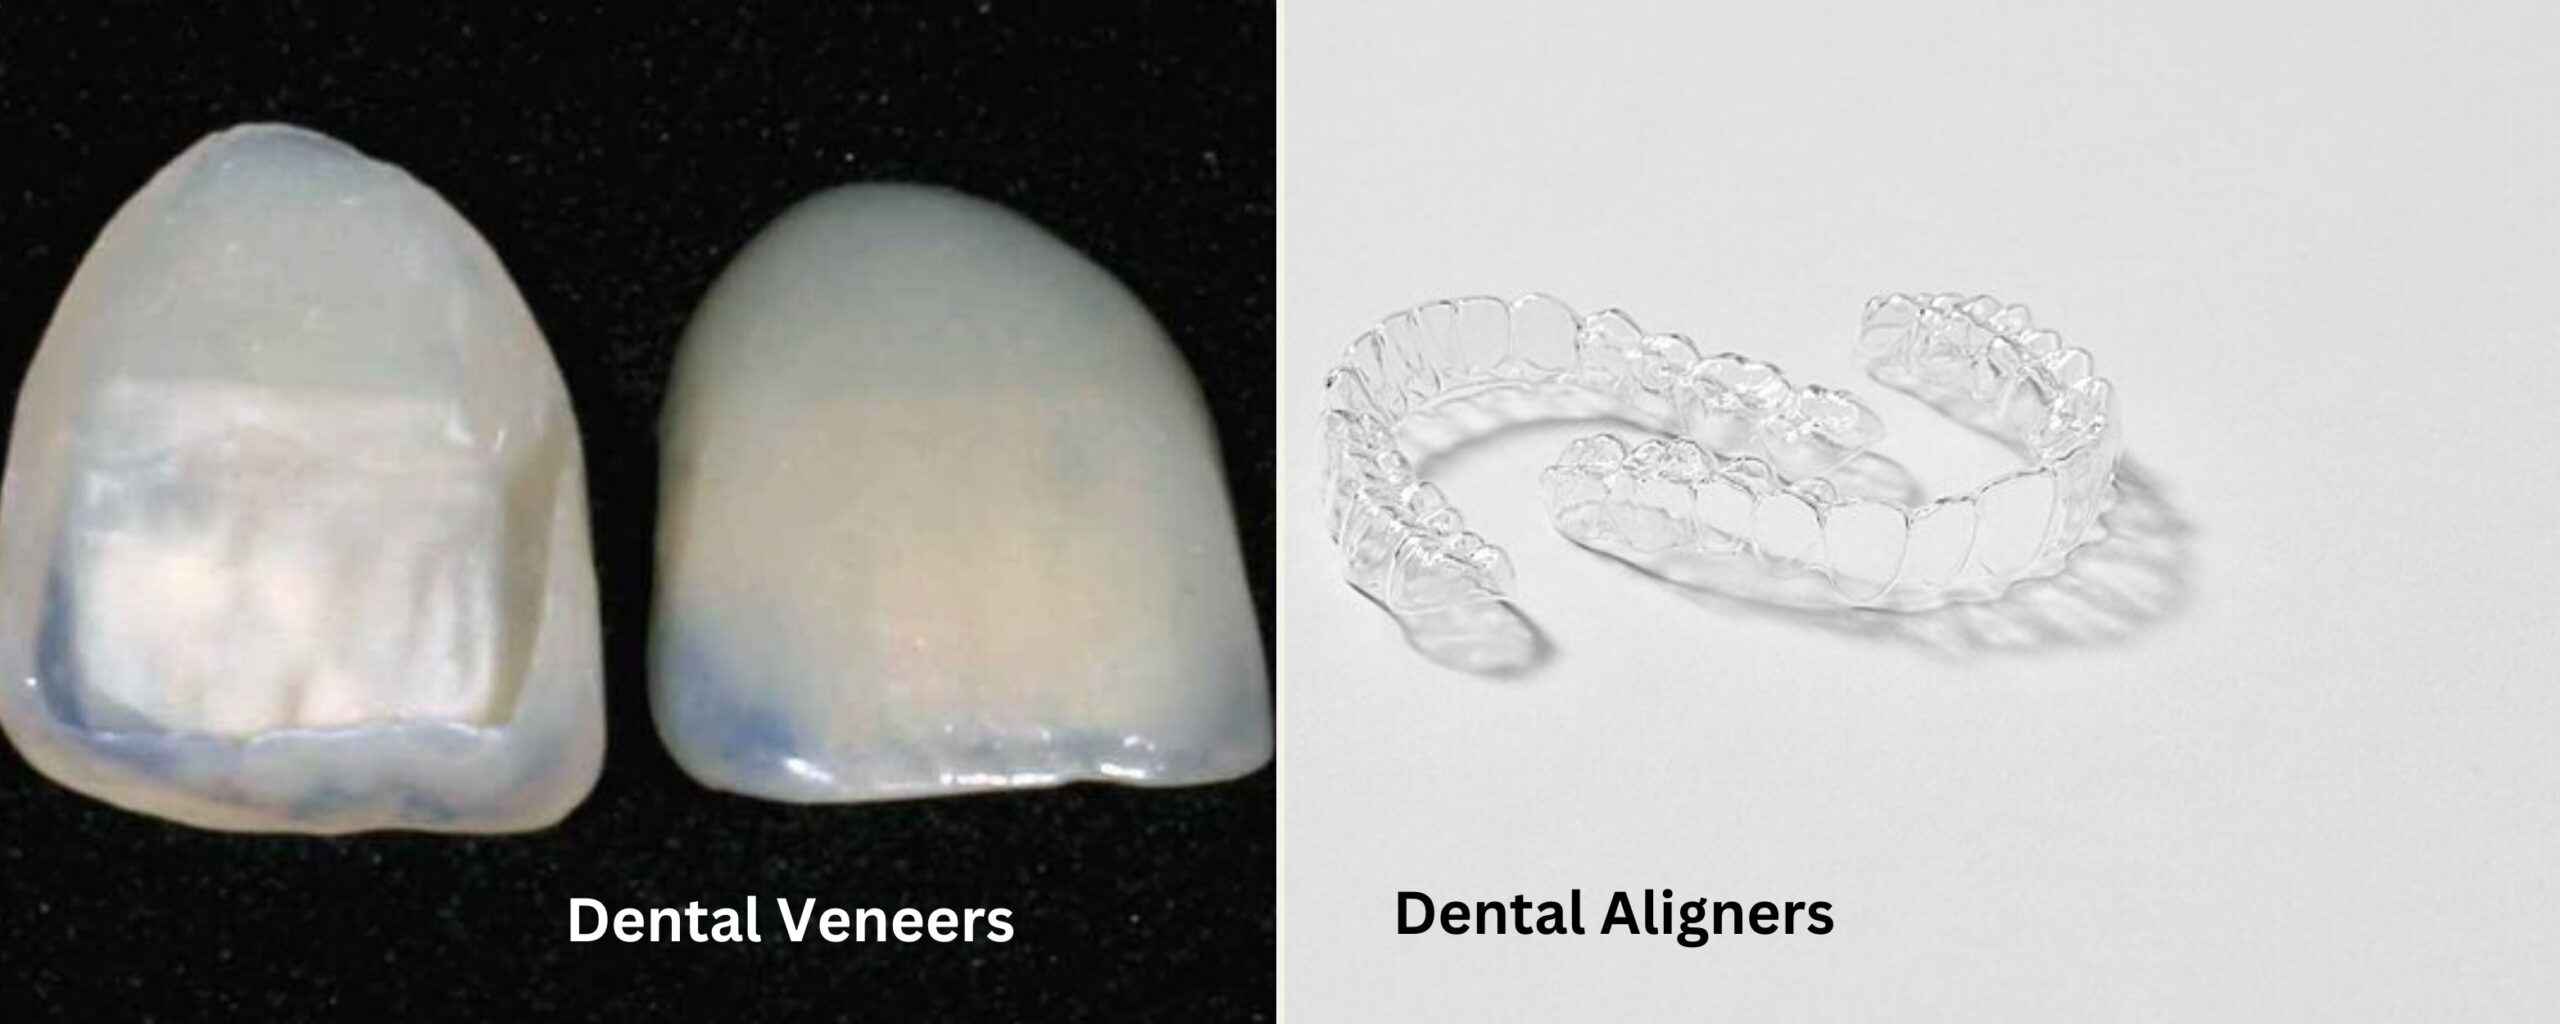 Dental-veneers-aligners-the-aartery-chronicles-tac